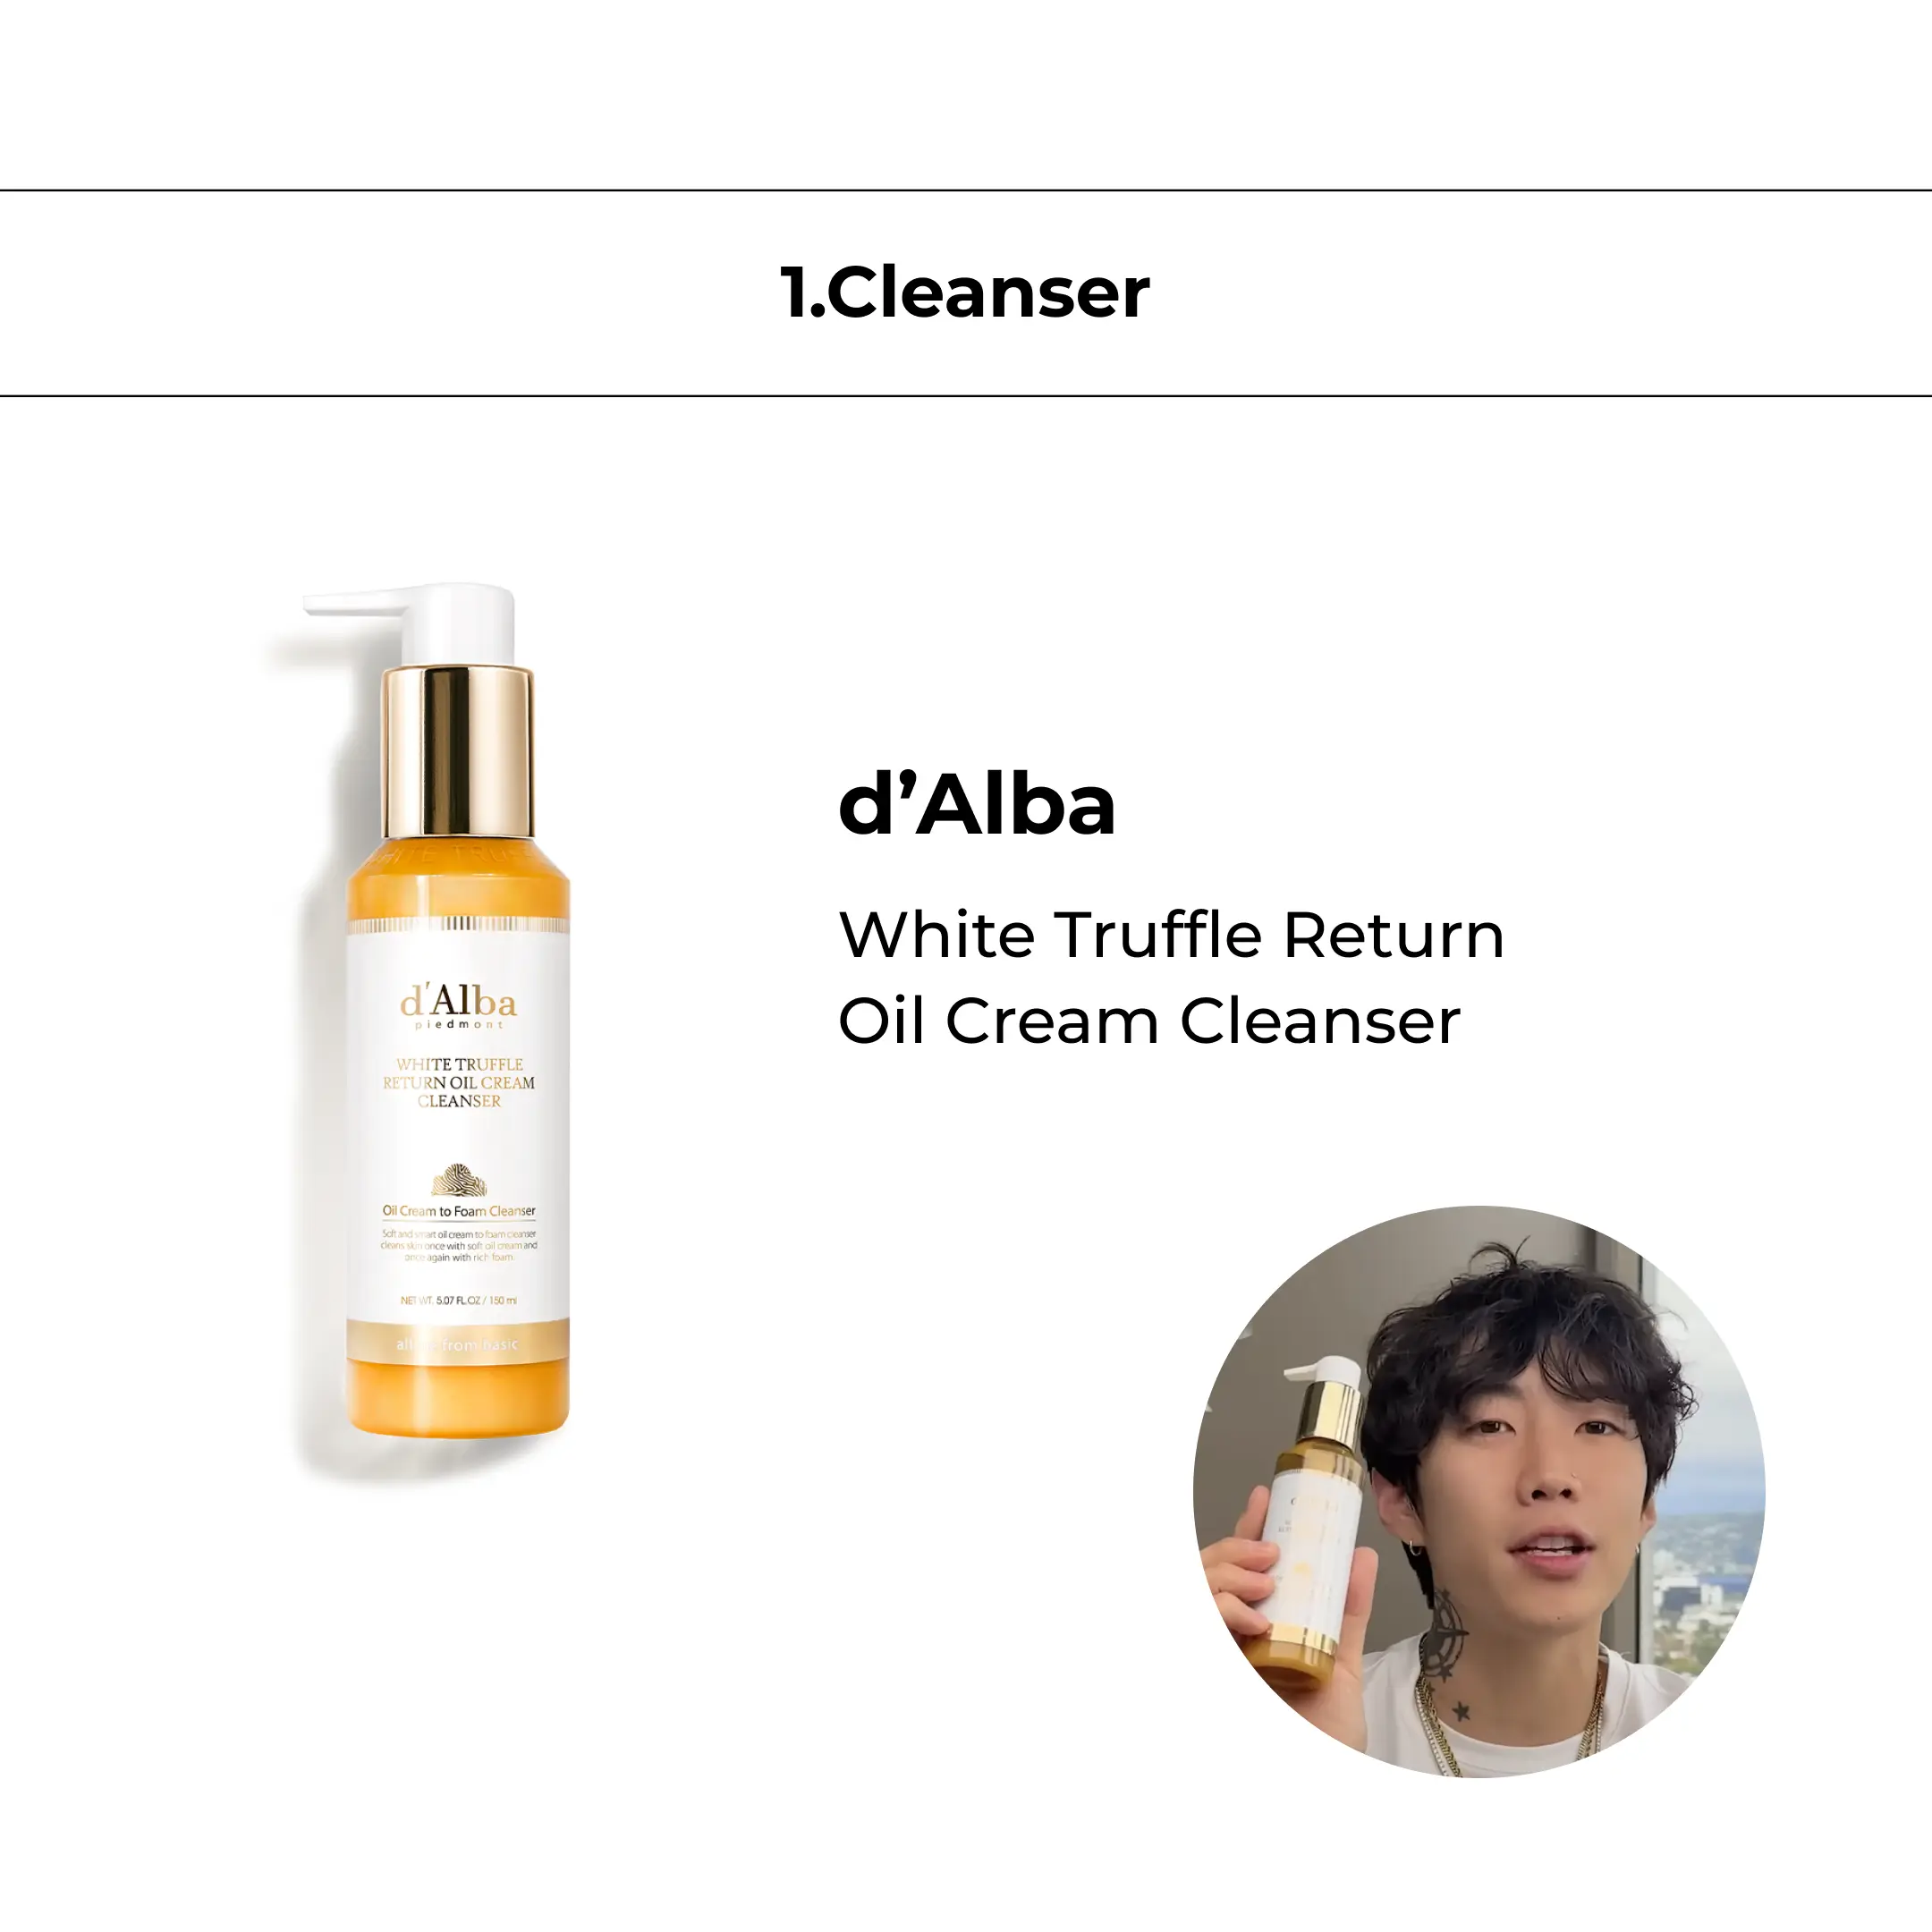 d'Alba White Truffle Return Oil Cream Cleanser